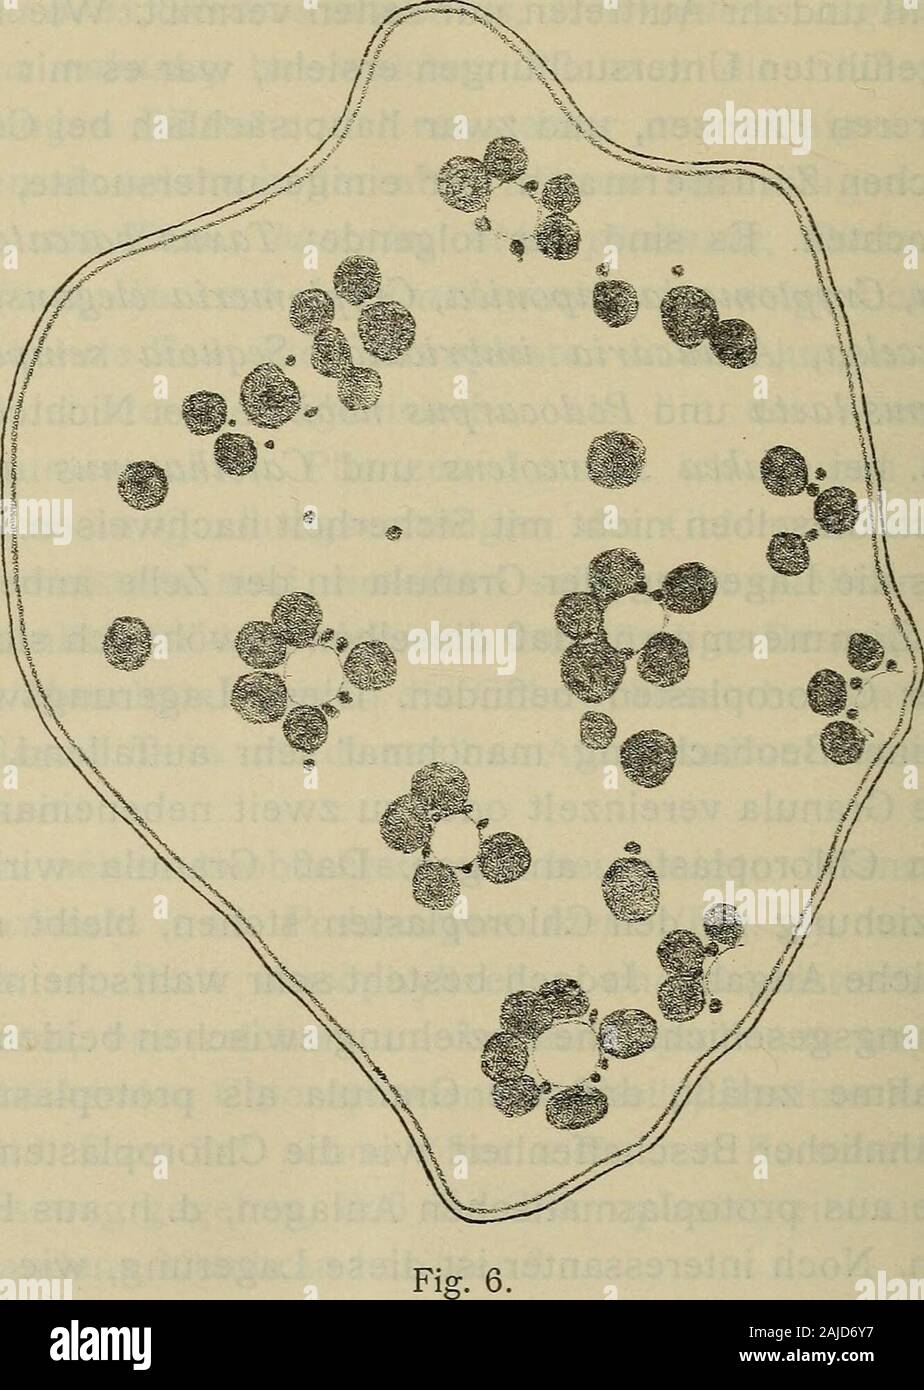 Sitzungsberichte . matischen Anlagen, d. h. aus Piastidenentstehen. Noch interessanter ist diese Lagerung, wie sie z. B.bei Sequoia sempervirens (Fig. 6) vorkommt. In den Zellen desAssimilationsgewebes bilden sich gewöhnlich einige Vakuolen.Die Chloroplasten liegen dicht an deren Wand und zwischendie Chloroplasten drängen sich die Granula, so daß gewöhnlich deutschen Bot. Ges., XXIII, 1905, p. 441) bei Selaginella Martensii Spreng,mit Sicherheit festgestellt. Jedoch ist diese Piasmahaut der Chloroplasten vonSelaginella mit der angeblichen Chloroplastenmembran nicht zu vergleichen,weil sie nur Stock Photo